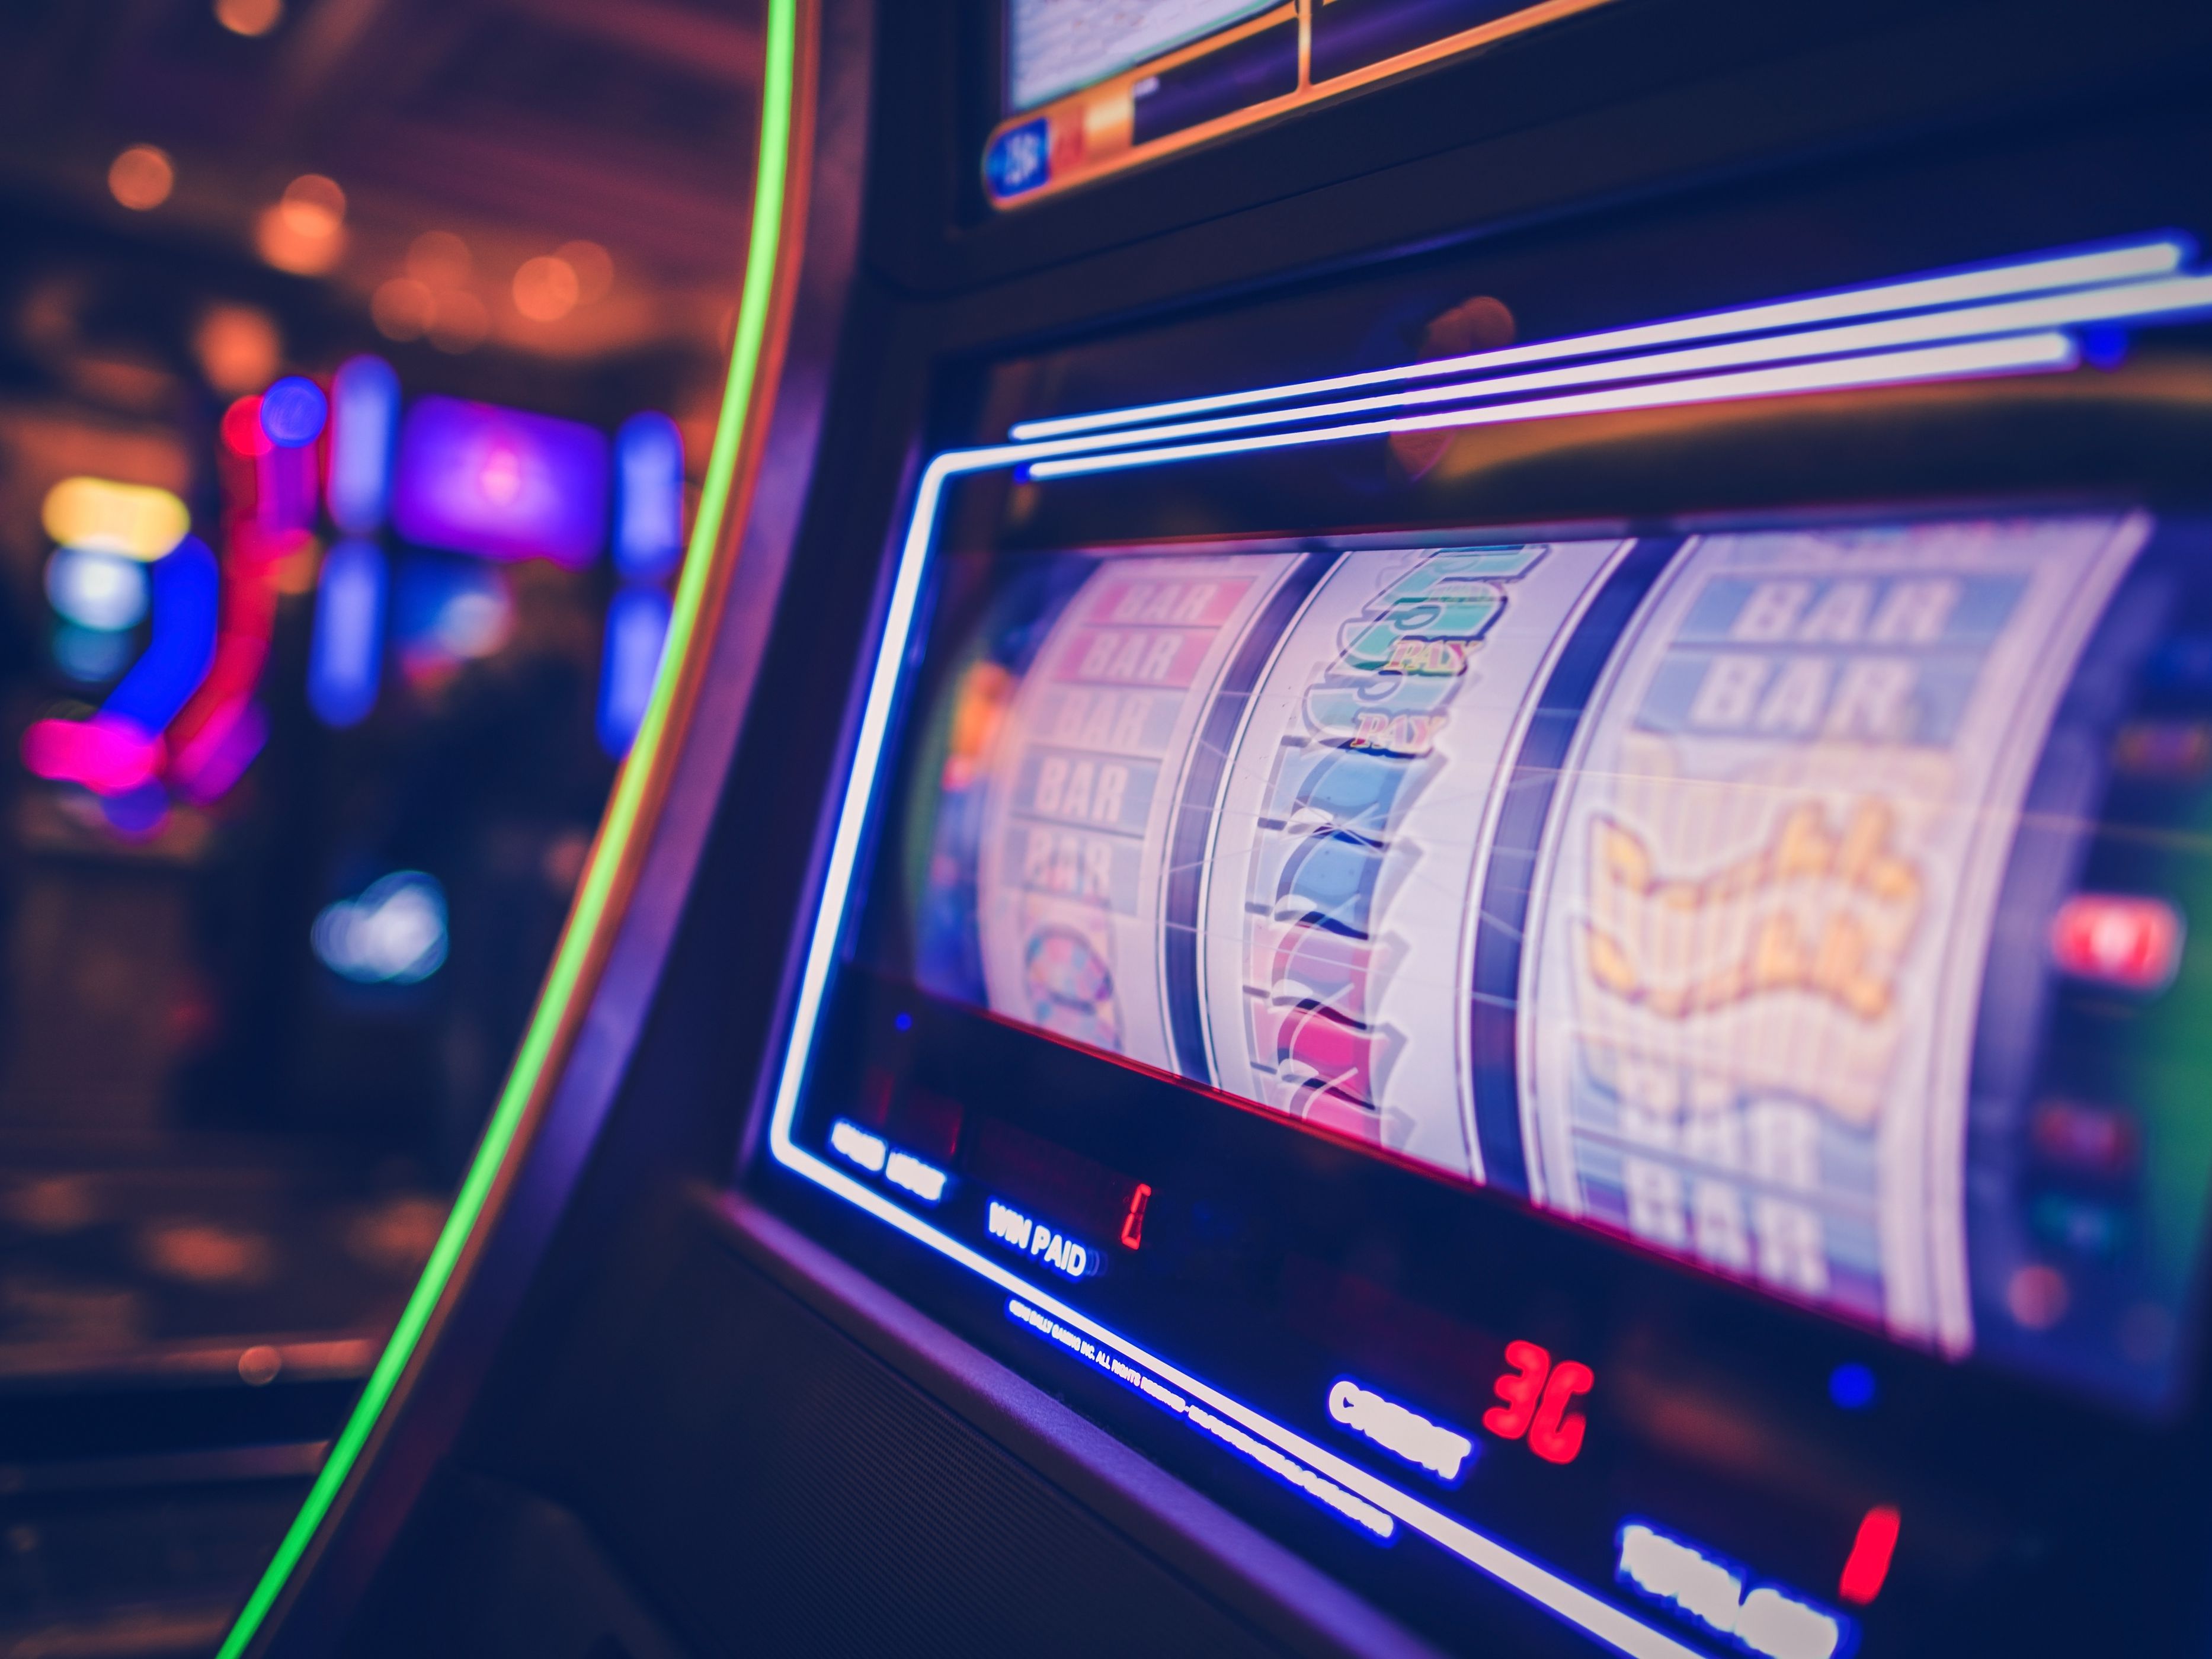 louisiana taxes on casino winnings